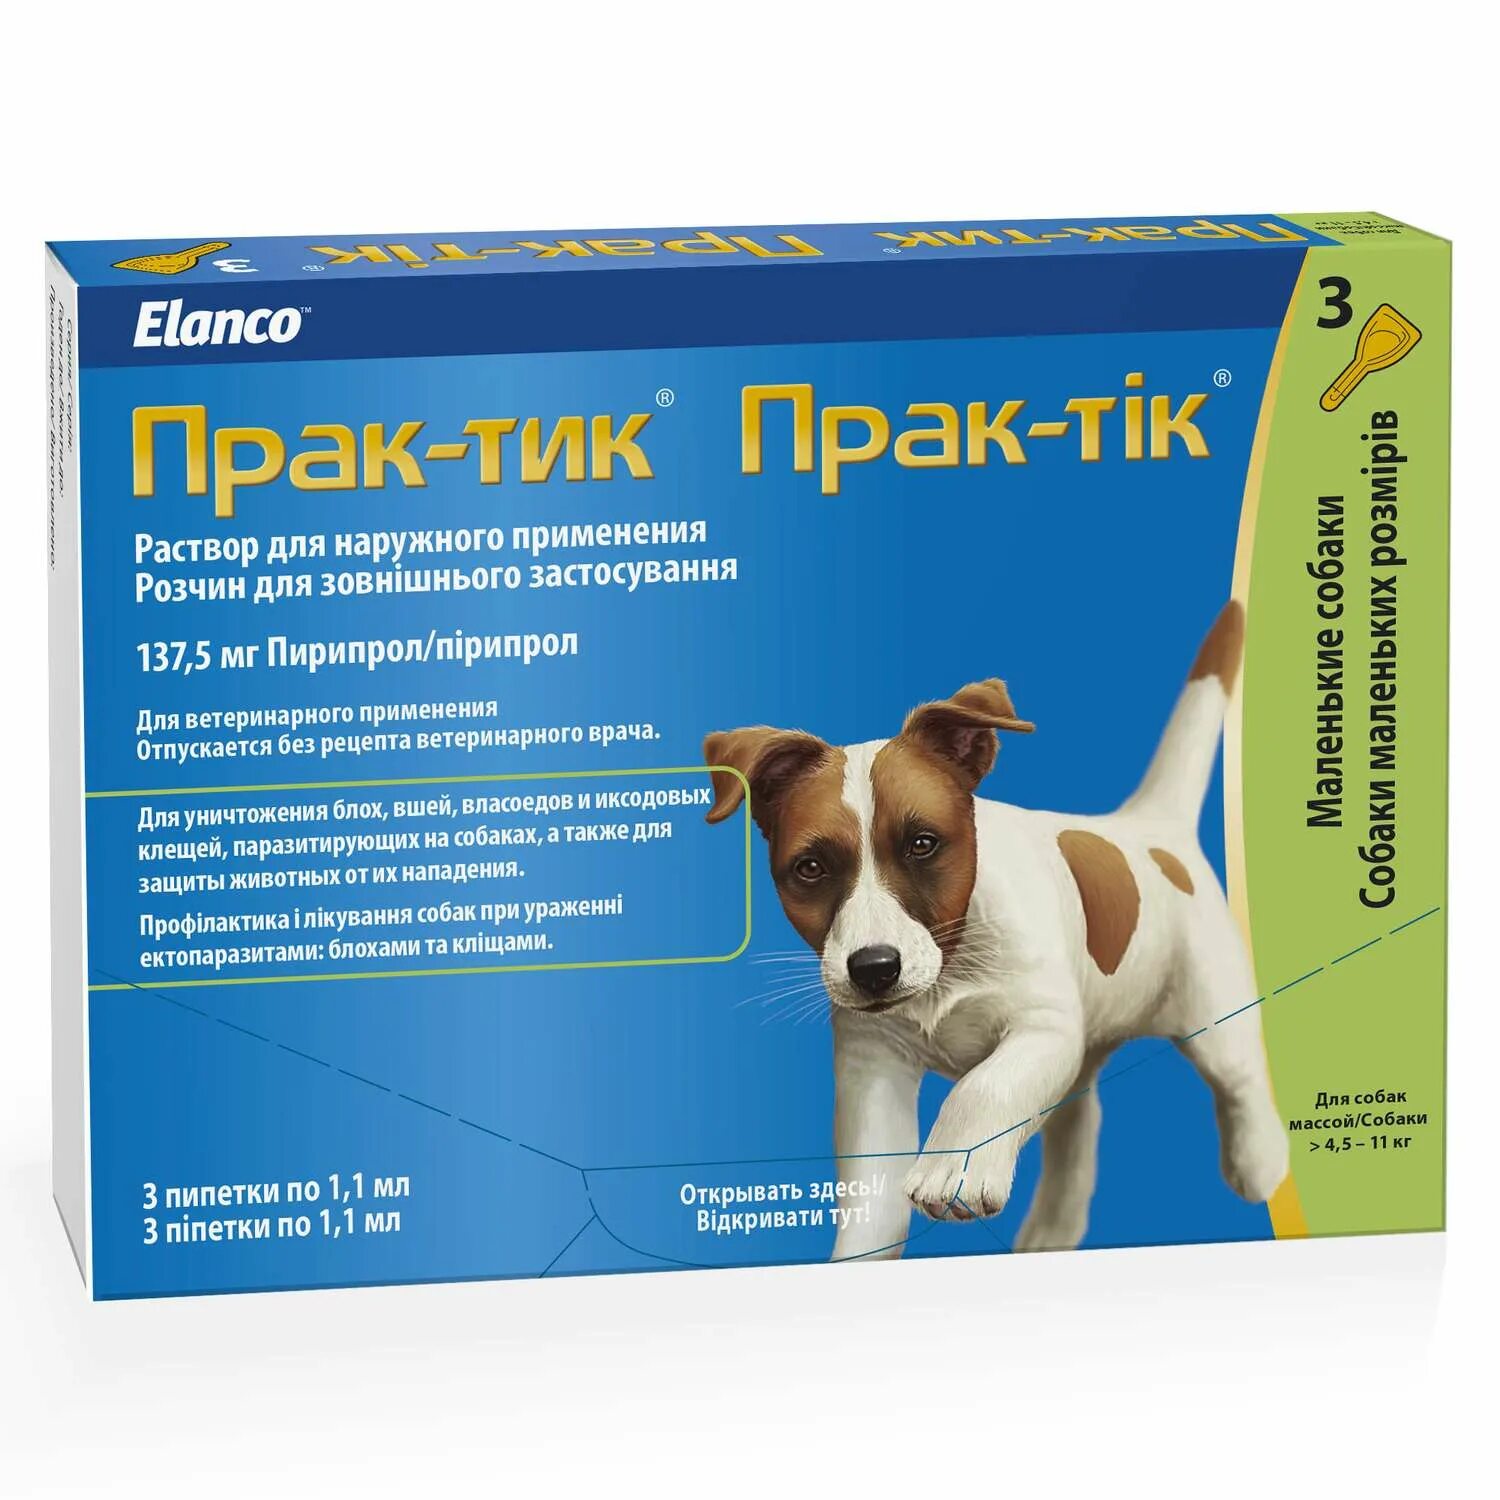 Капли для собак Elanco Практик от блох и клещей для собак 2-4.5кг. Практик капли для собак 4.5- 11кг. Elanco прак-тик для собак 2-4.5 кг 3 пипетки. Прак-тик 1,1 мл д/собак 4,5-11 кг. Капли практик купить